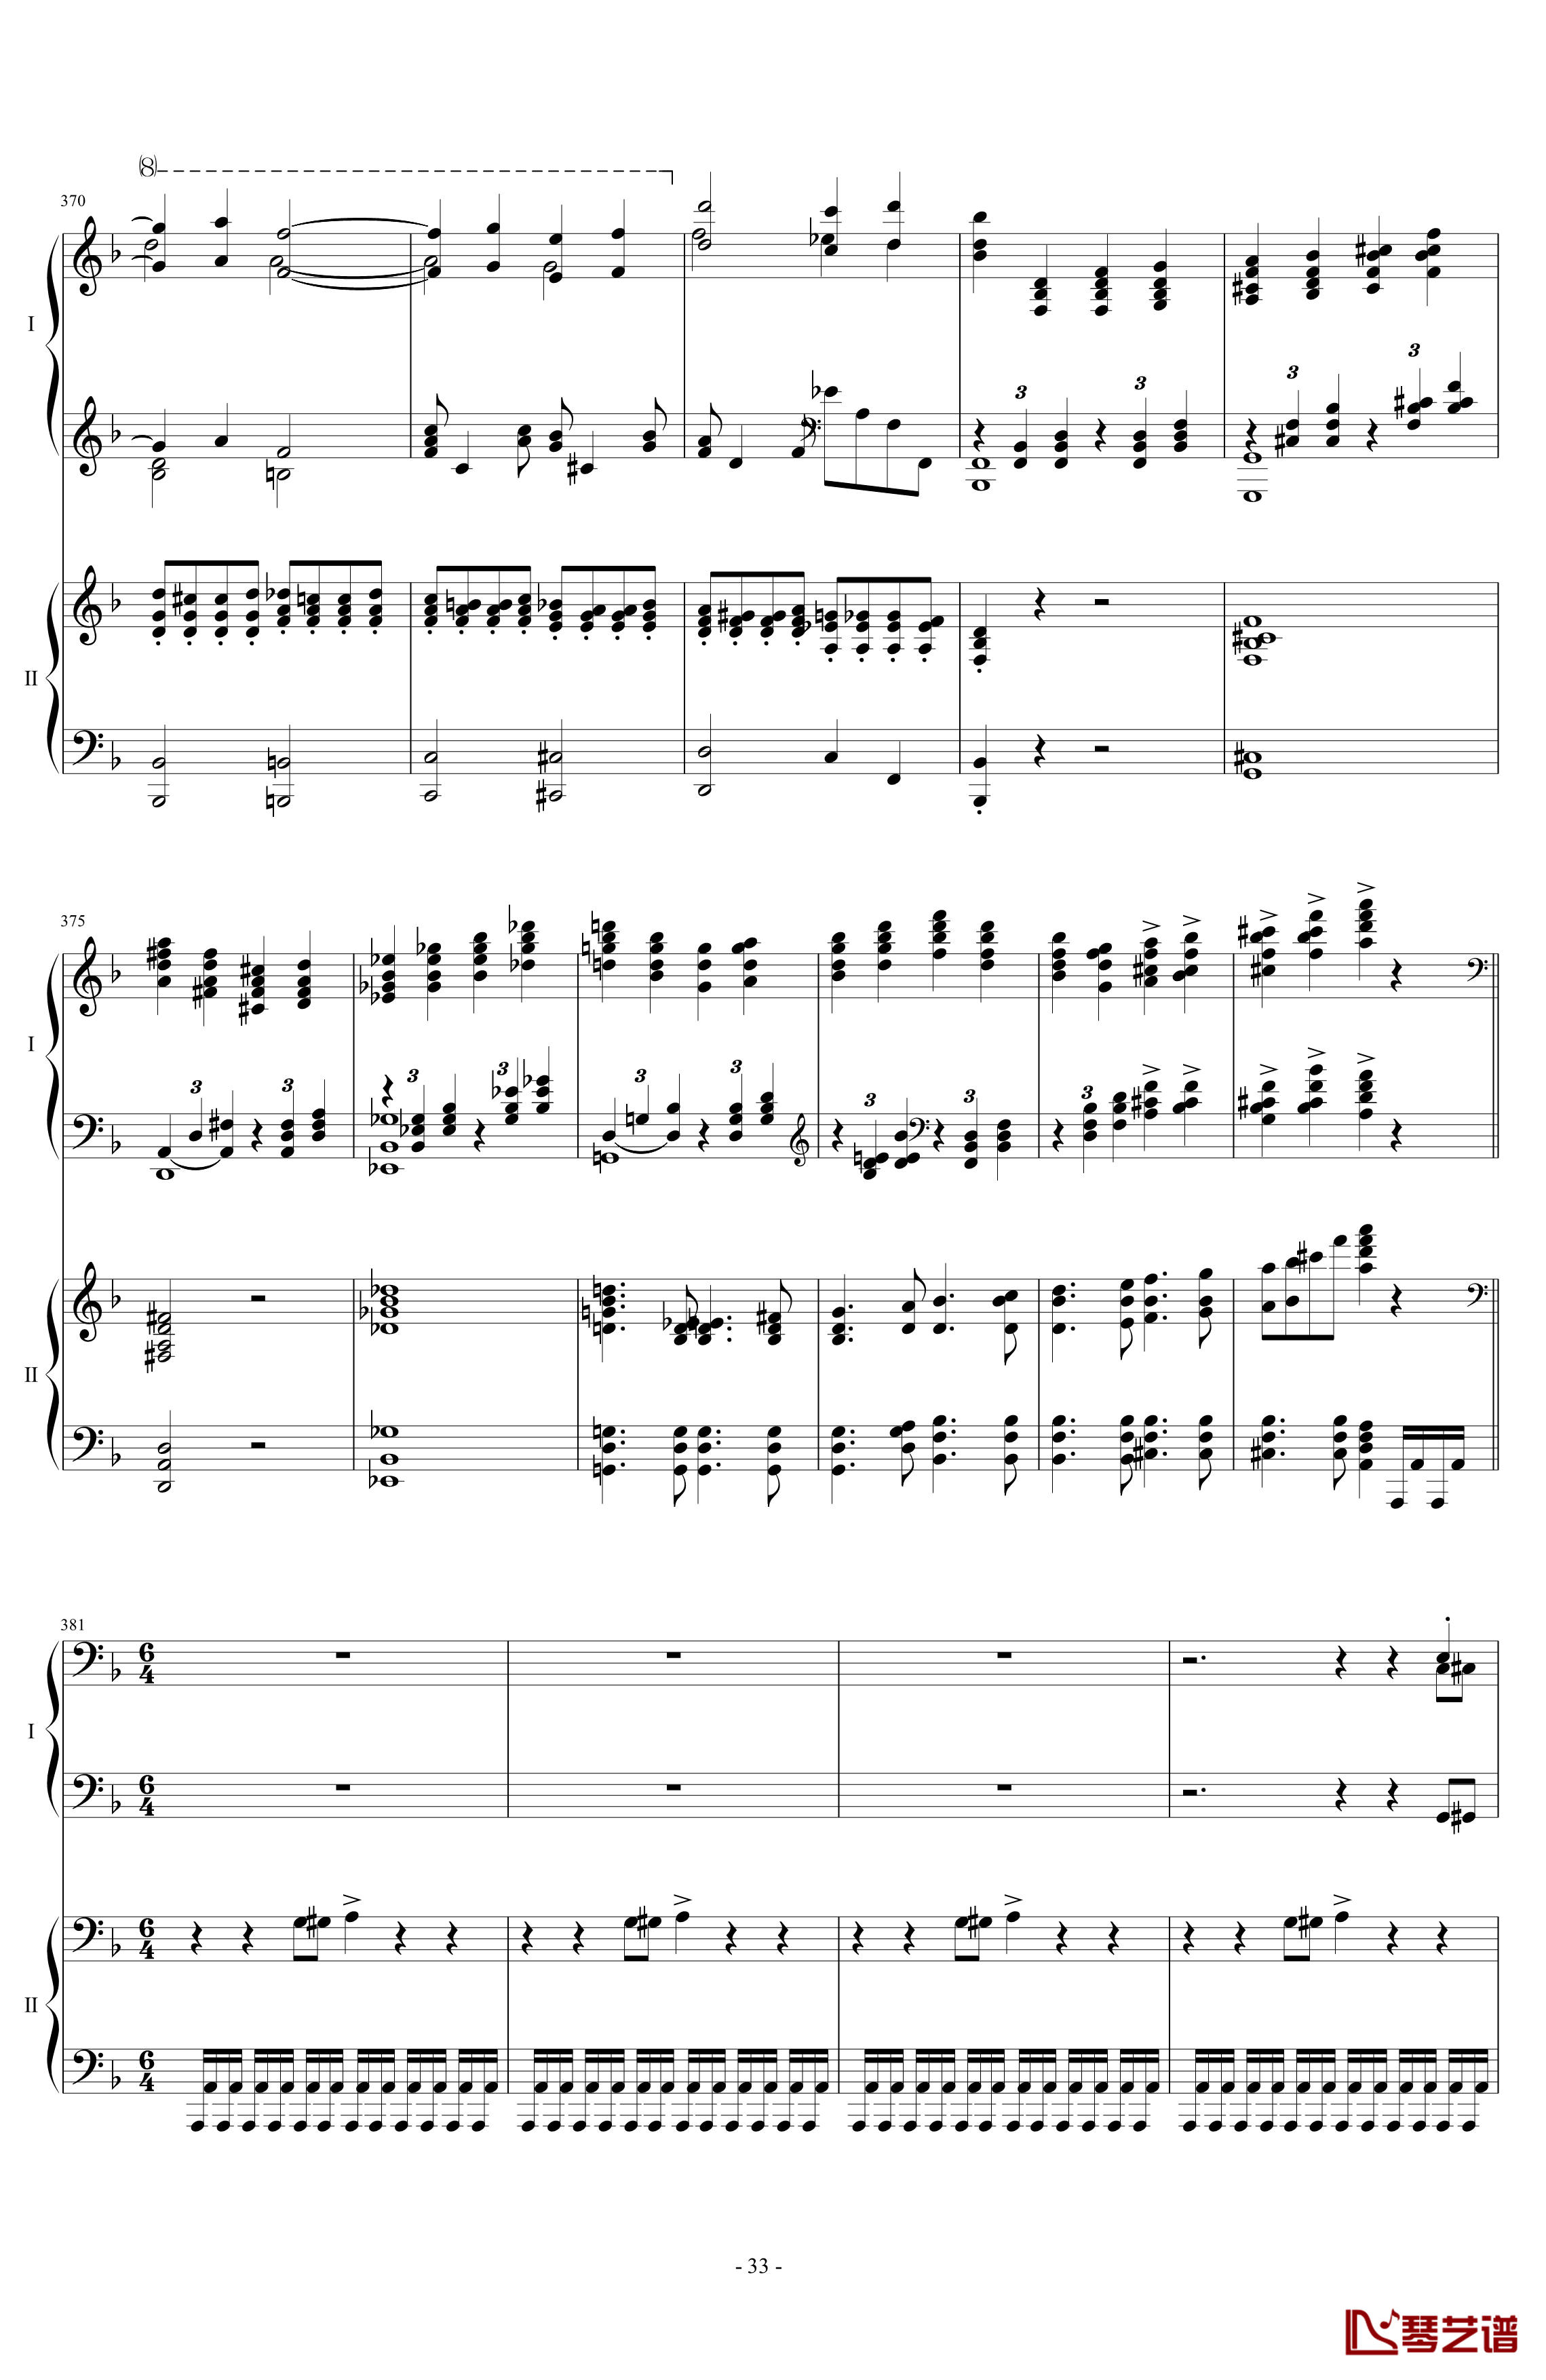 拉三第三乐章41页双钢琴钢琴谱-最难钢琴曲-拉赫马尼若夫33